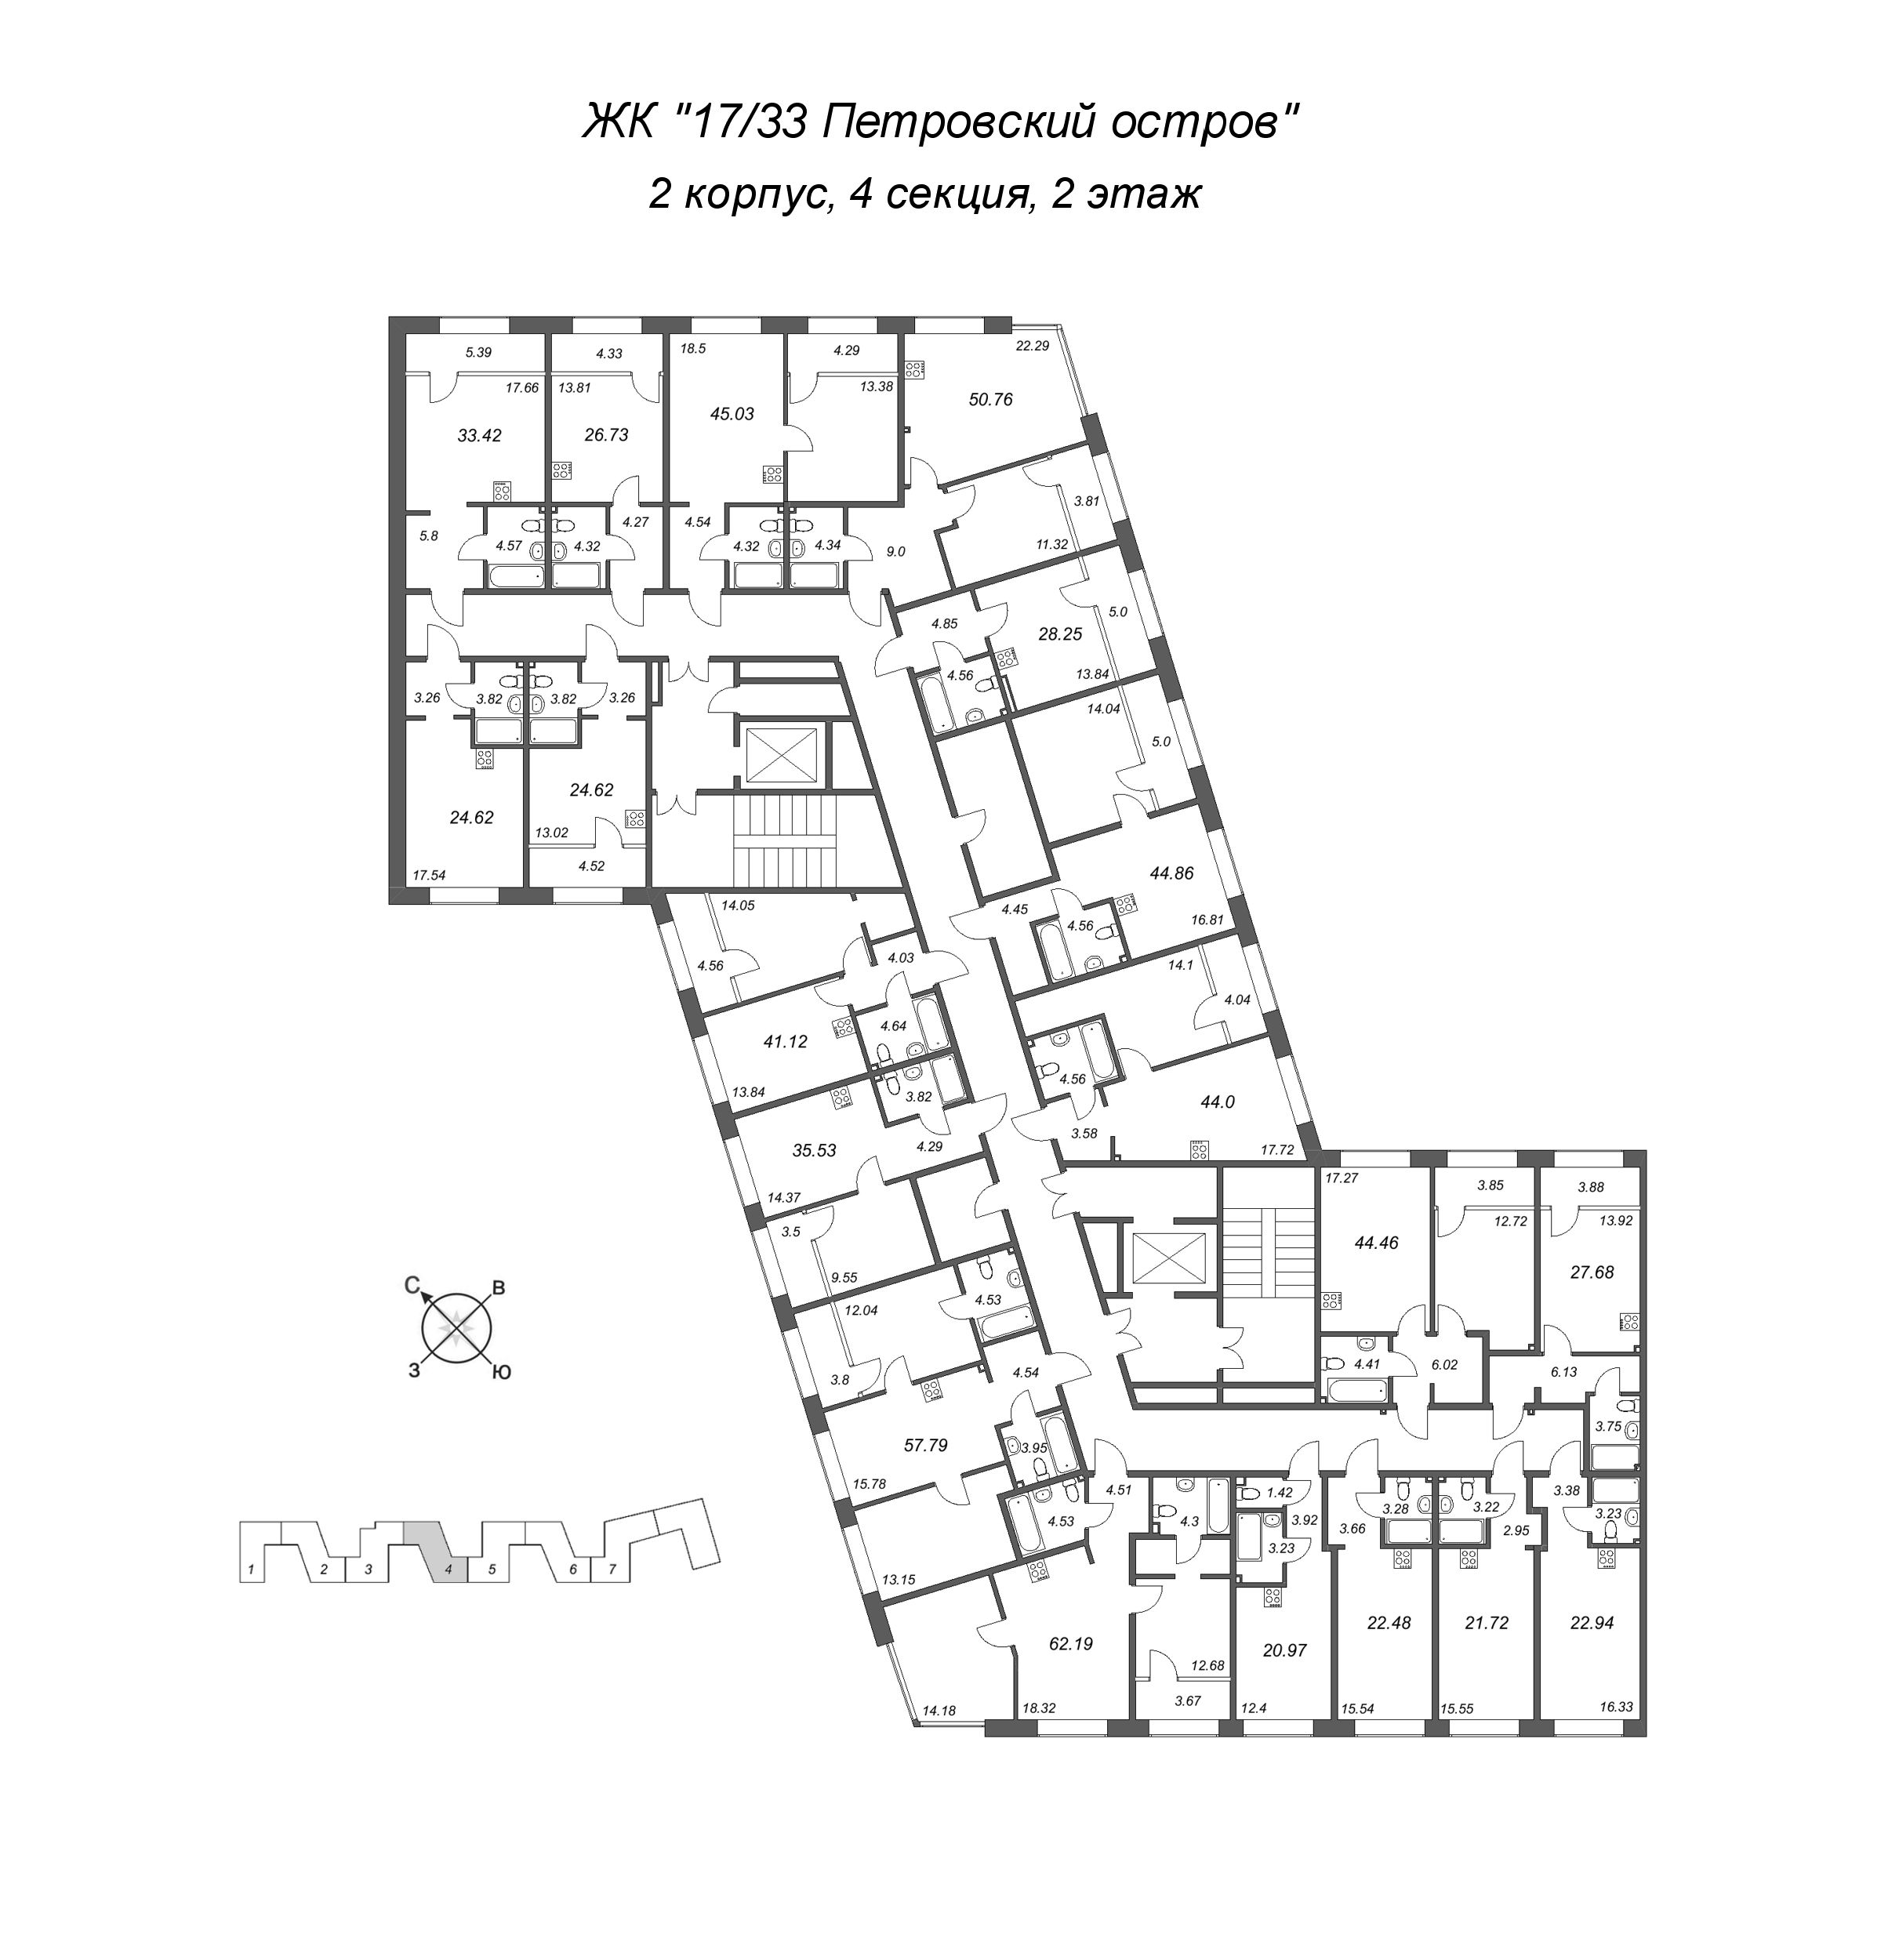 2-комнатная (Евро) квартира, 44.86 м² в ЖК "17/33 Петровский остров" - планировка этажа